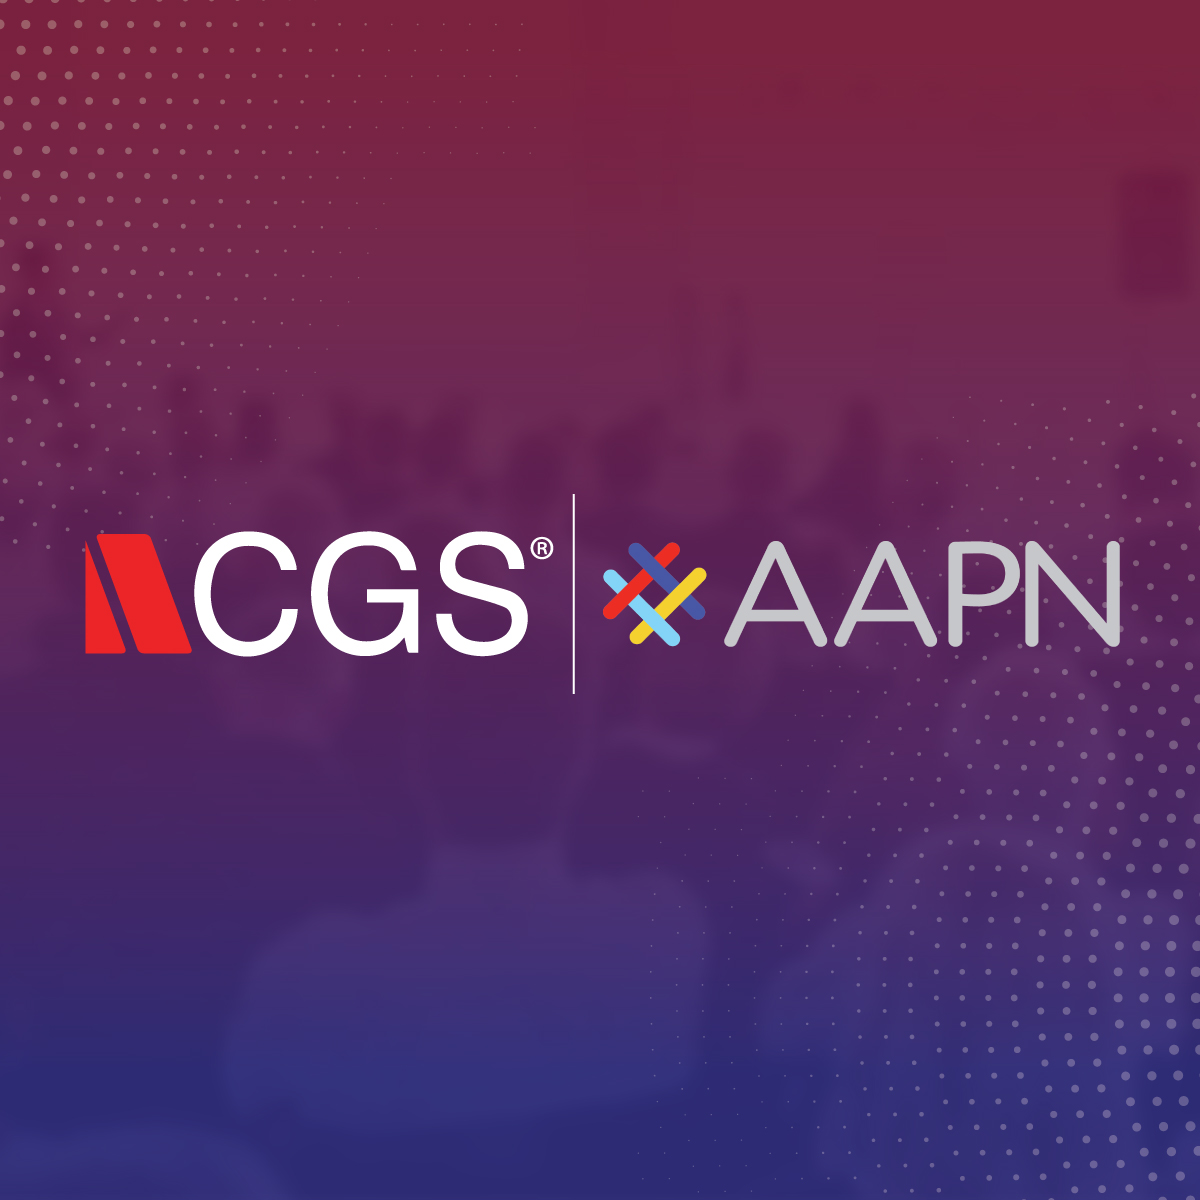 CGS AAPN logos